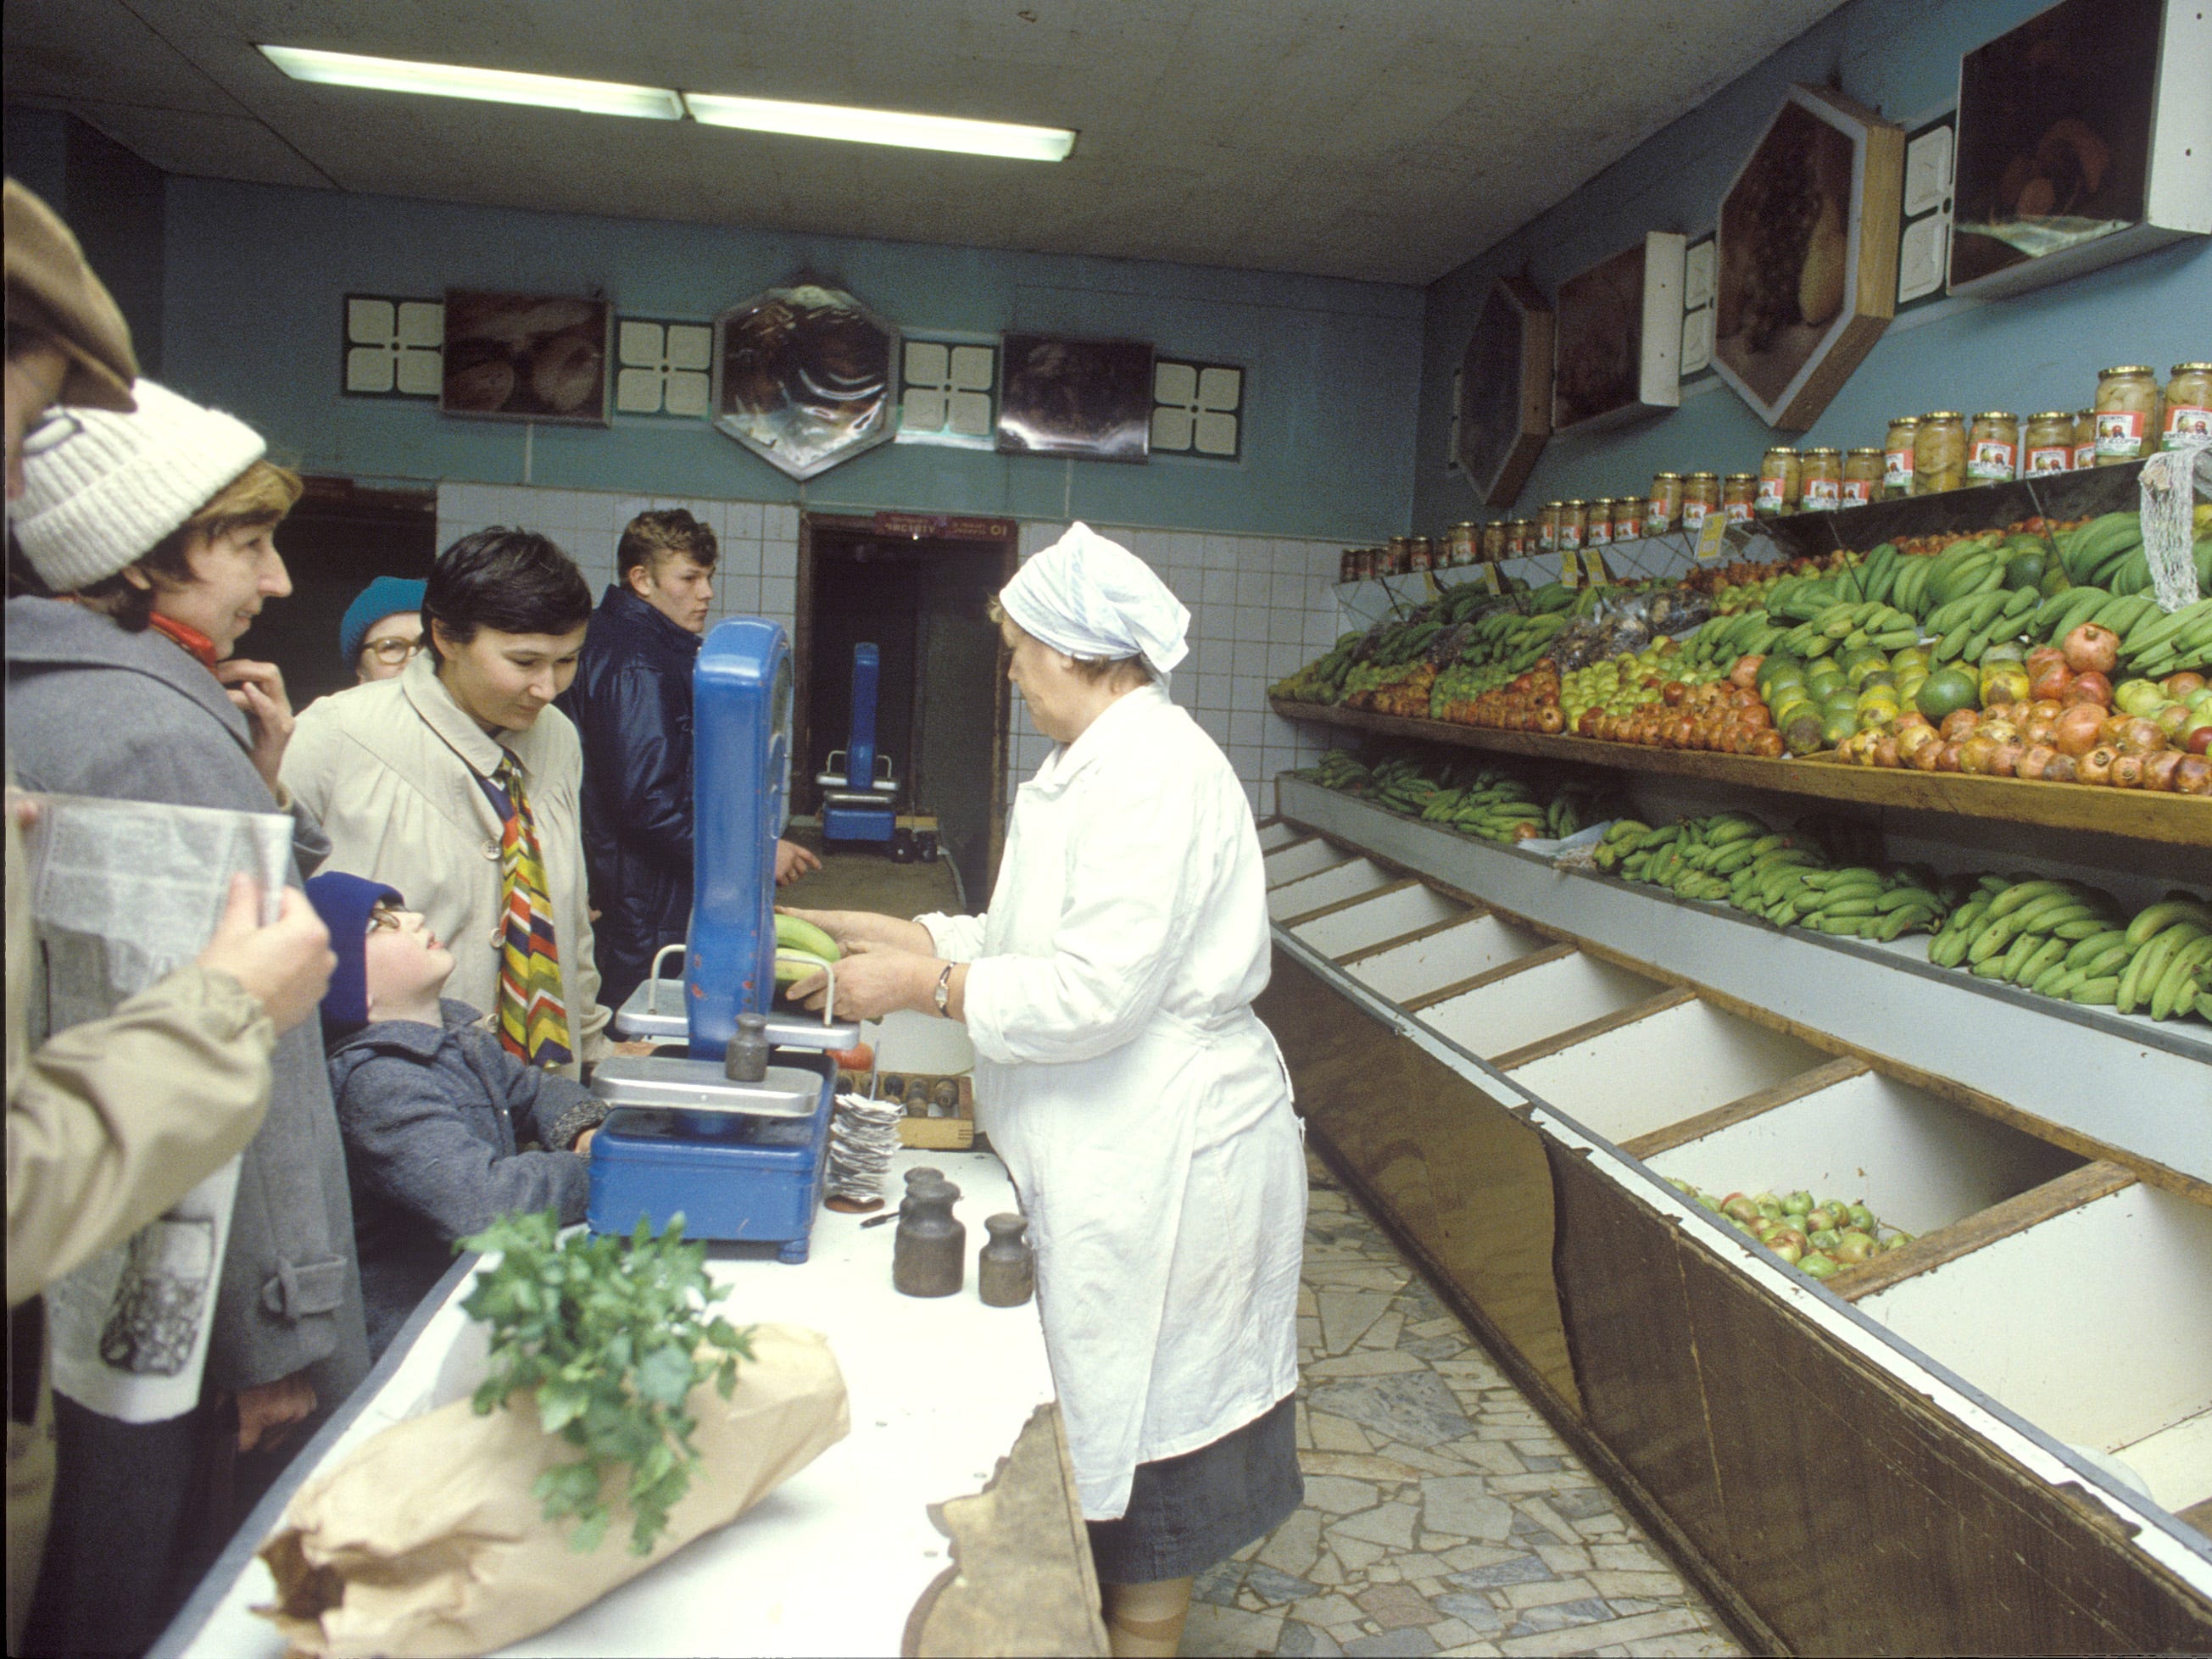 Sowjetischer Lebensmitteleinkauf